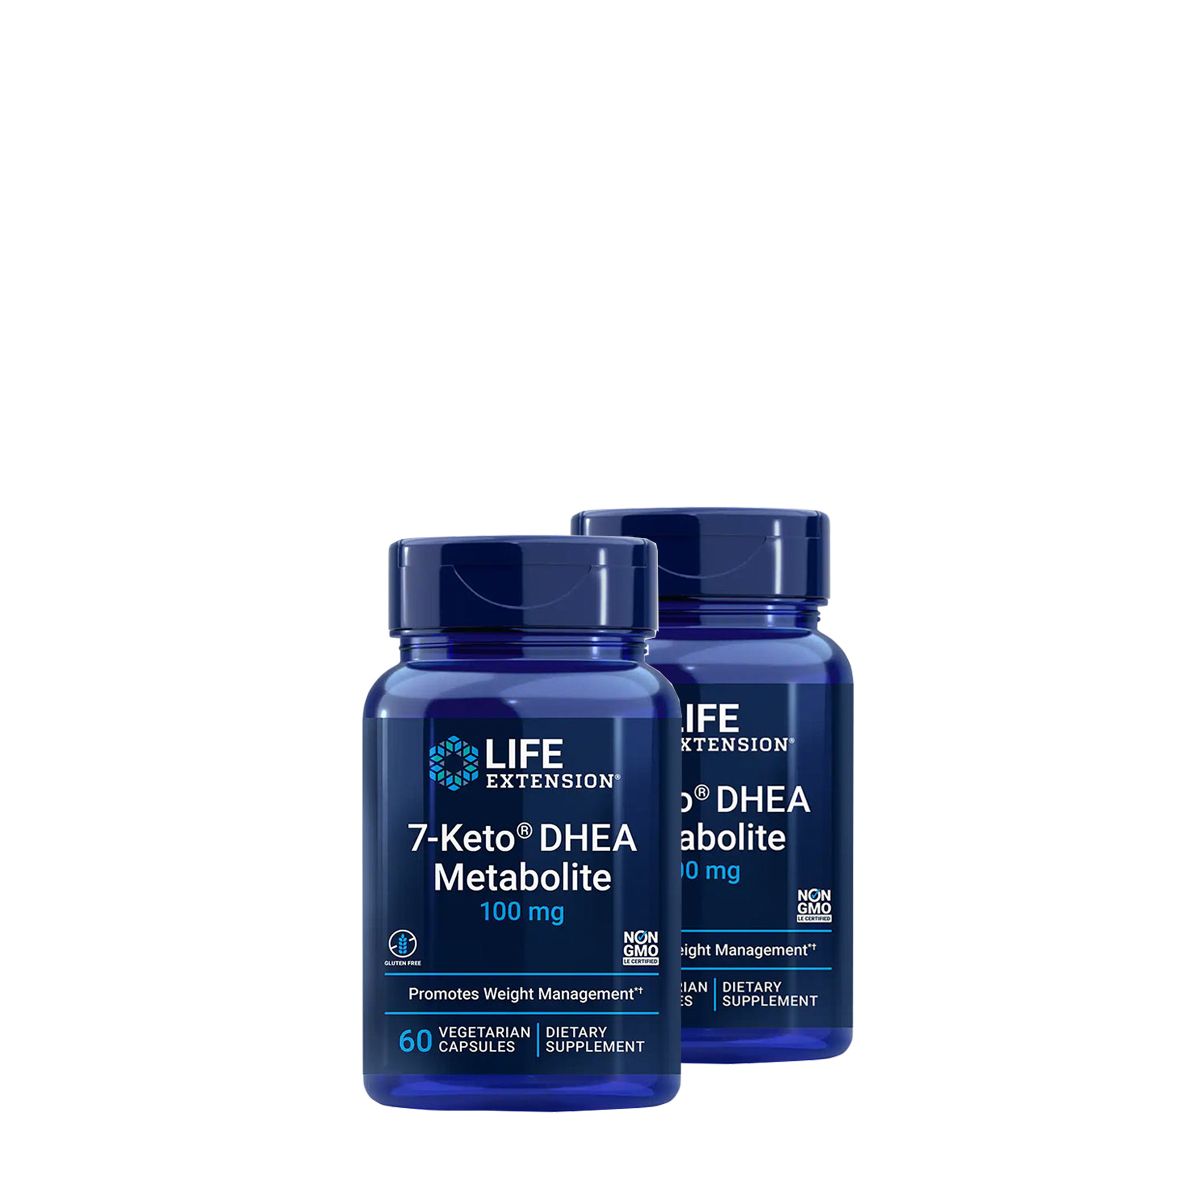 7-Keto 100 mg, Life Extension 7-Keto DHEA Metabolite, 2x60 kapszula